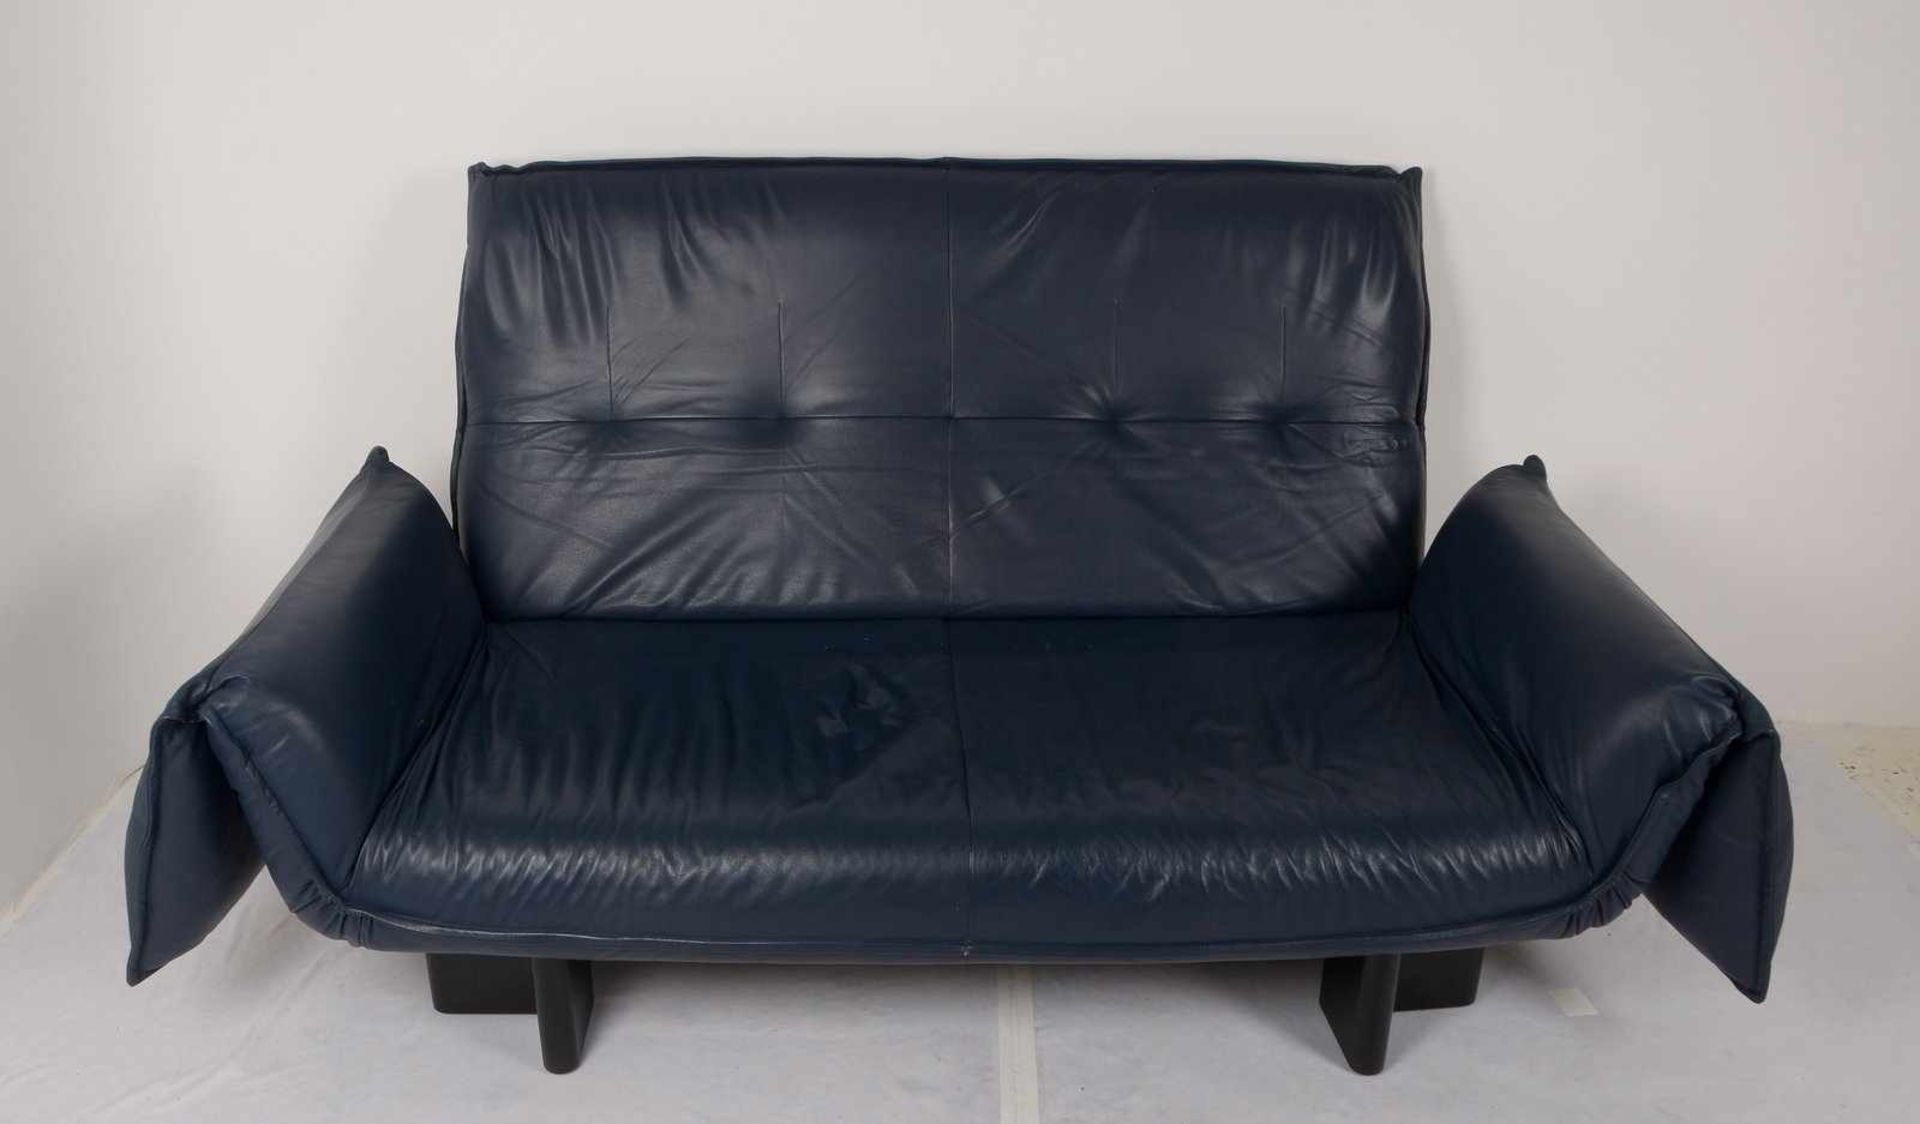 Birdie, Designer-Sofa/Zweisitzer, nachtblaues Echtleder, Sitz mit Federung, Rückenlehne hochklappbar - Bild 2 aus 3